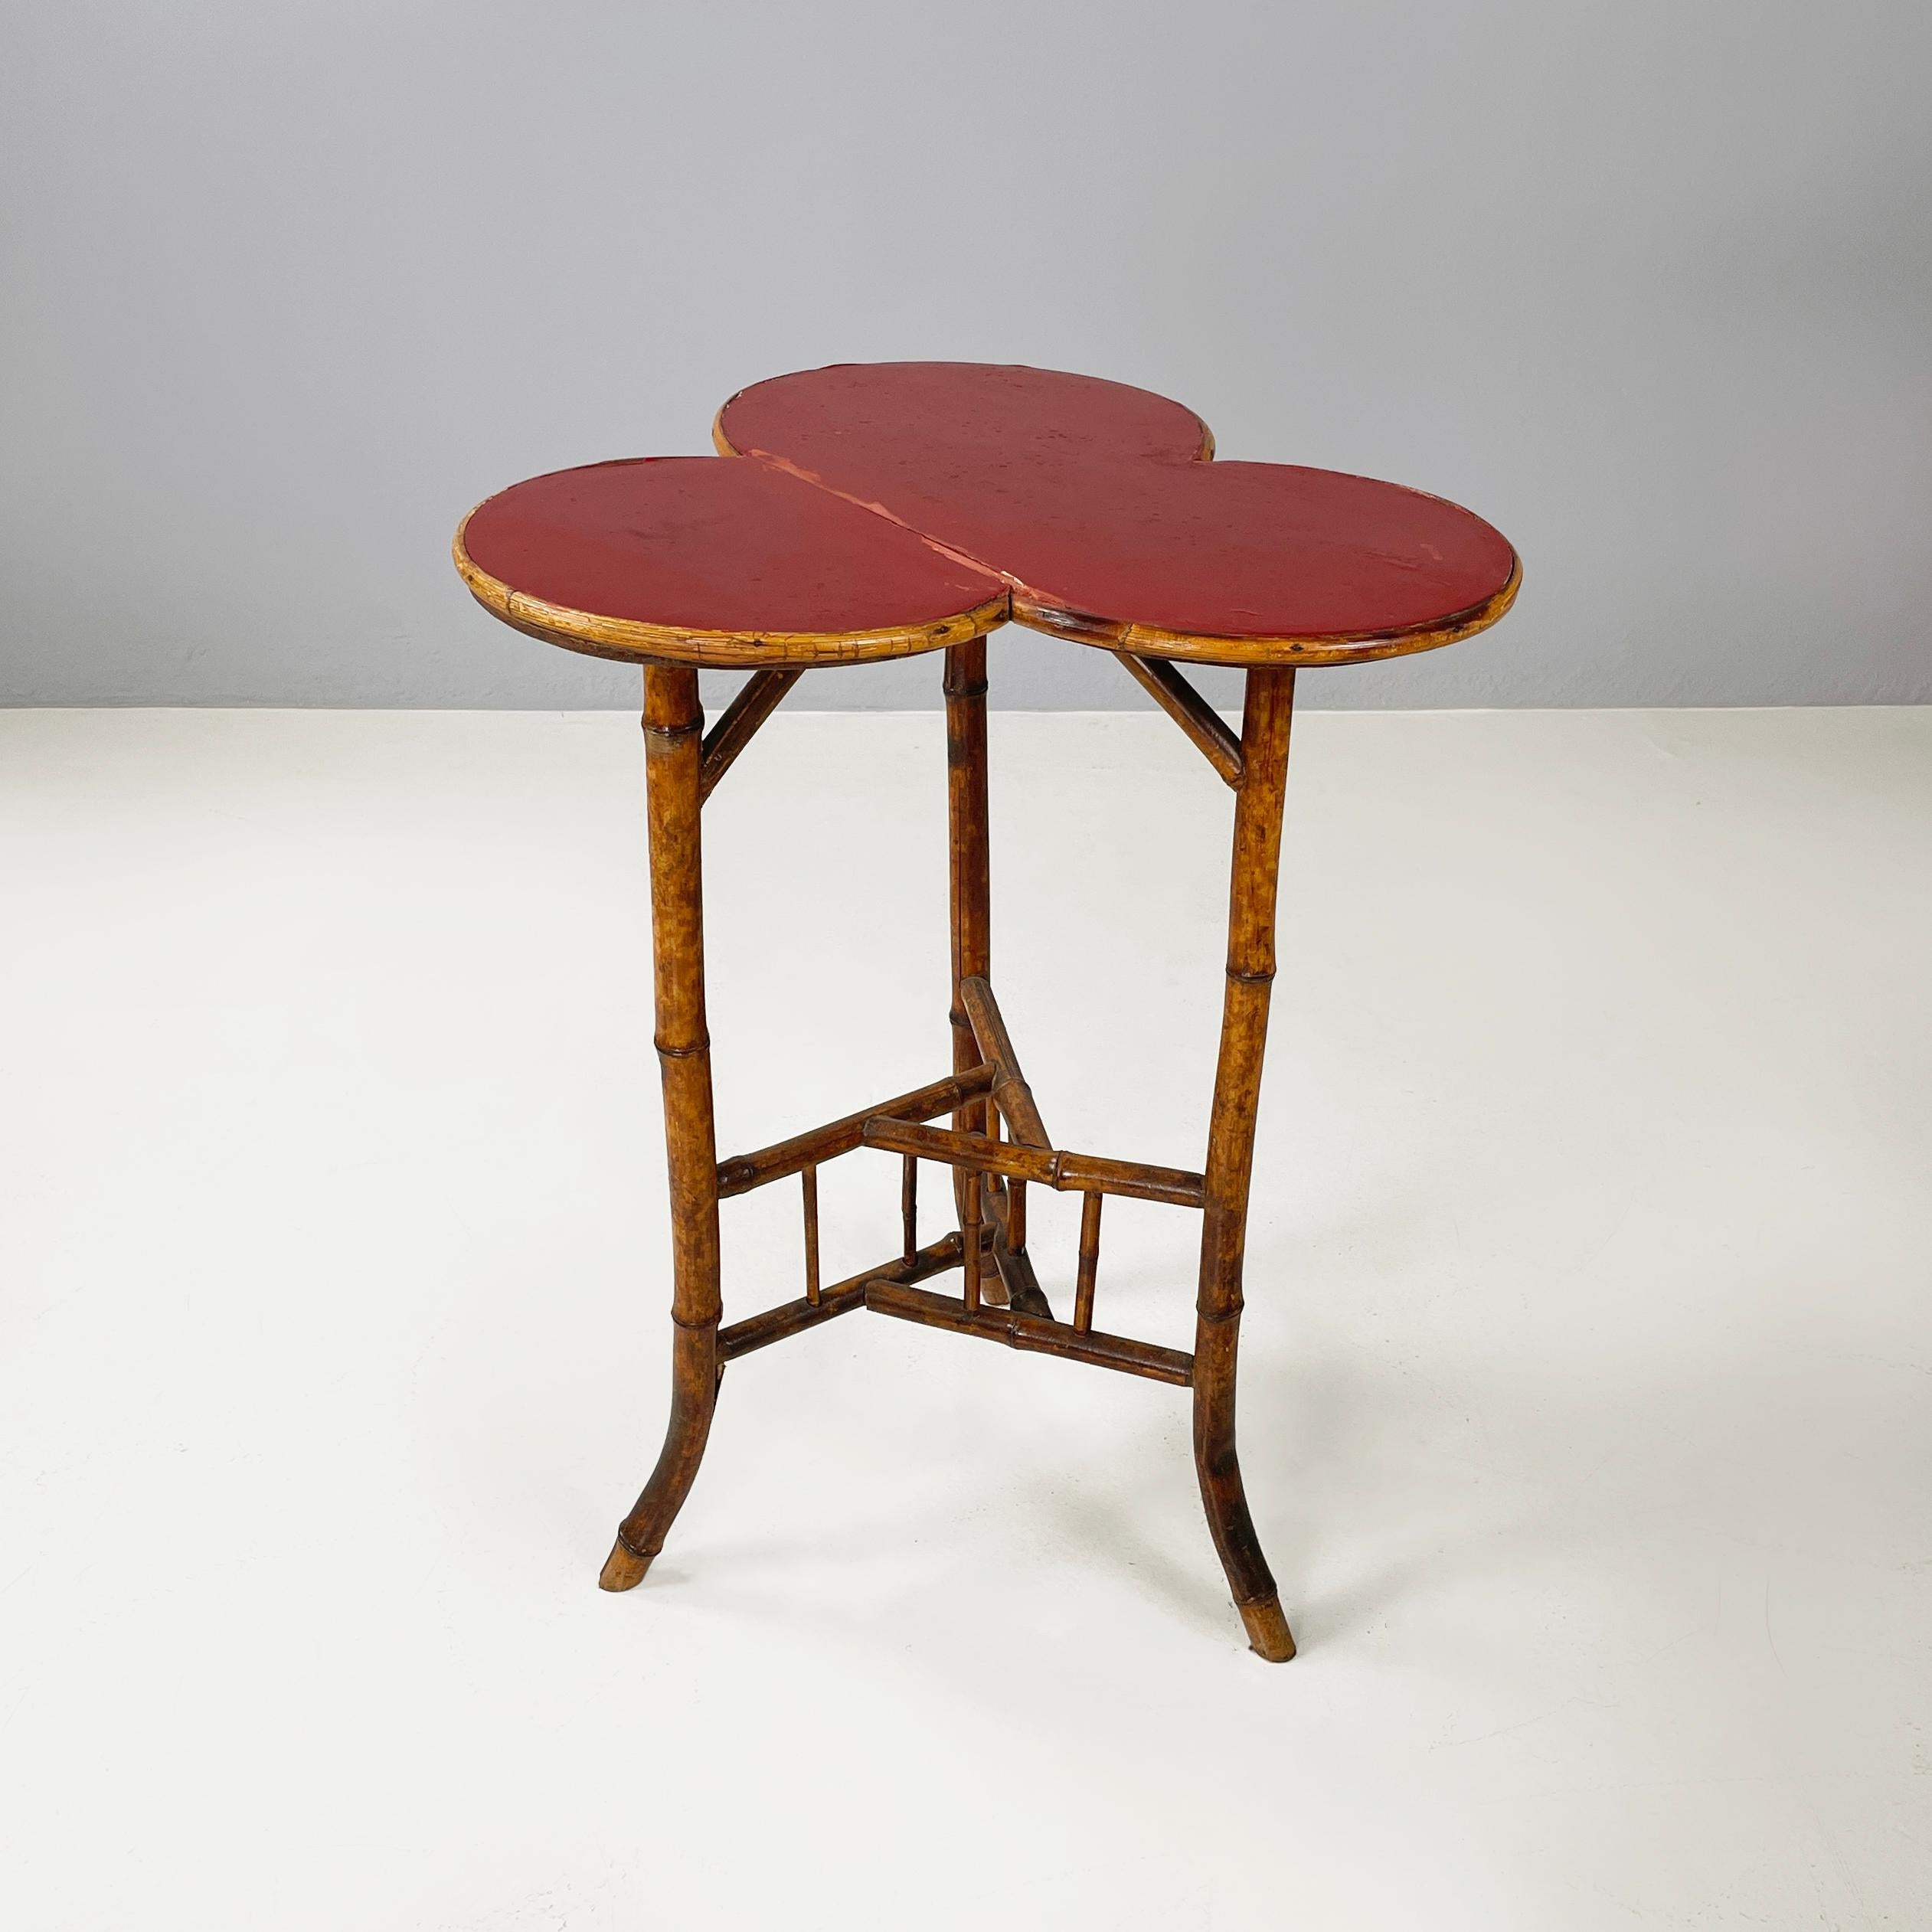 Table basse art déco italienne avec plateau en trèfle de bois rouge et bambou, 1900-1950s
Table basse avec plateau en forme de trèfle en bois peint en rouge foncé avec profil en bois. Les trois pieds en bambou ont une structure triangulaire au